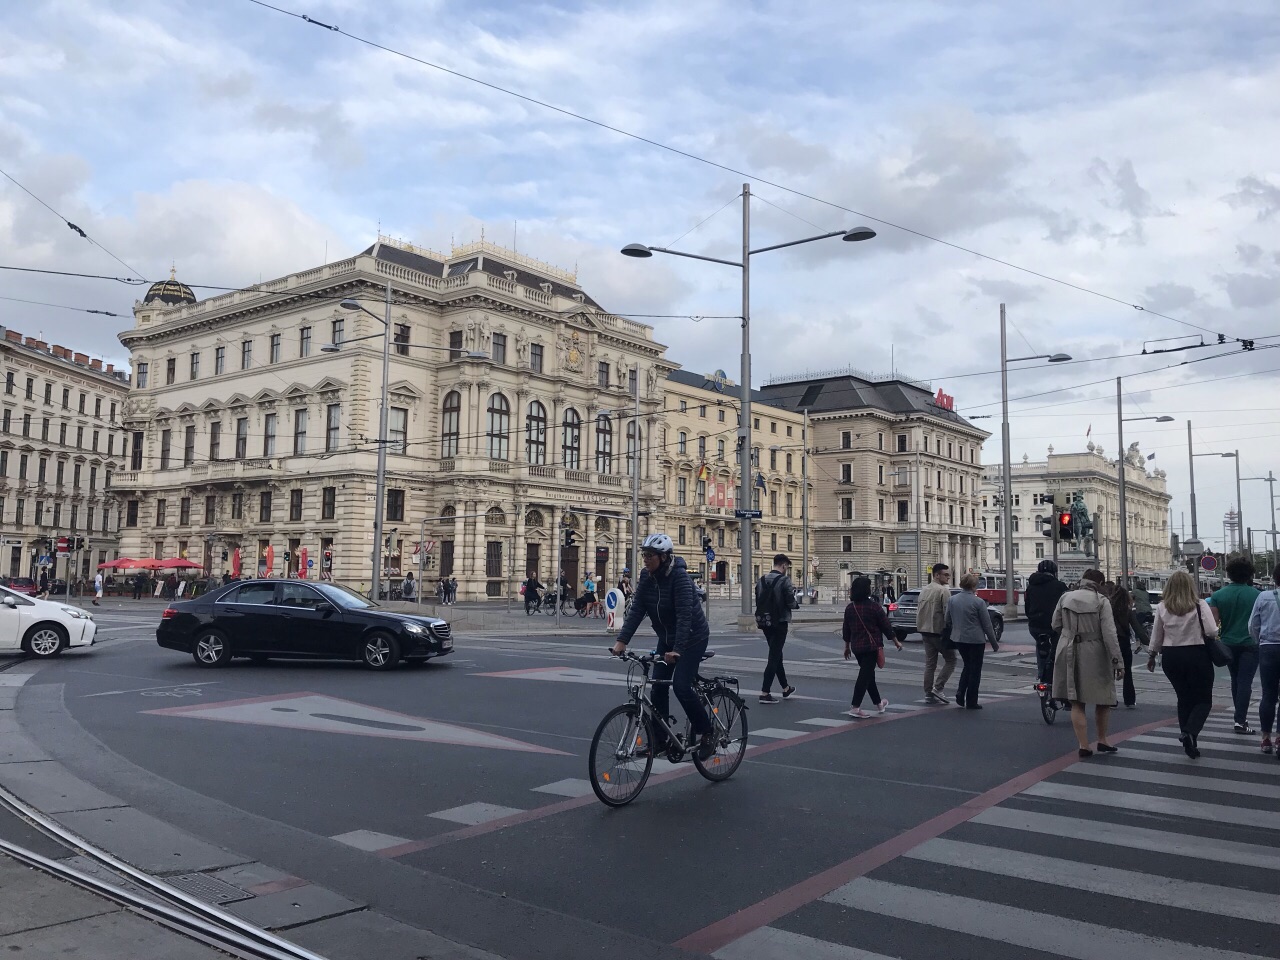 维也纳环城大道攻略,维也纳环城大道简介图片,门票价格,开放时间 - 无二之旅